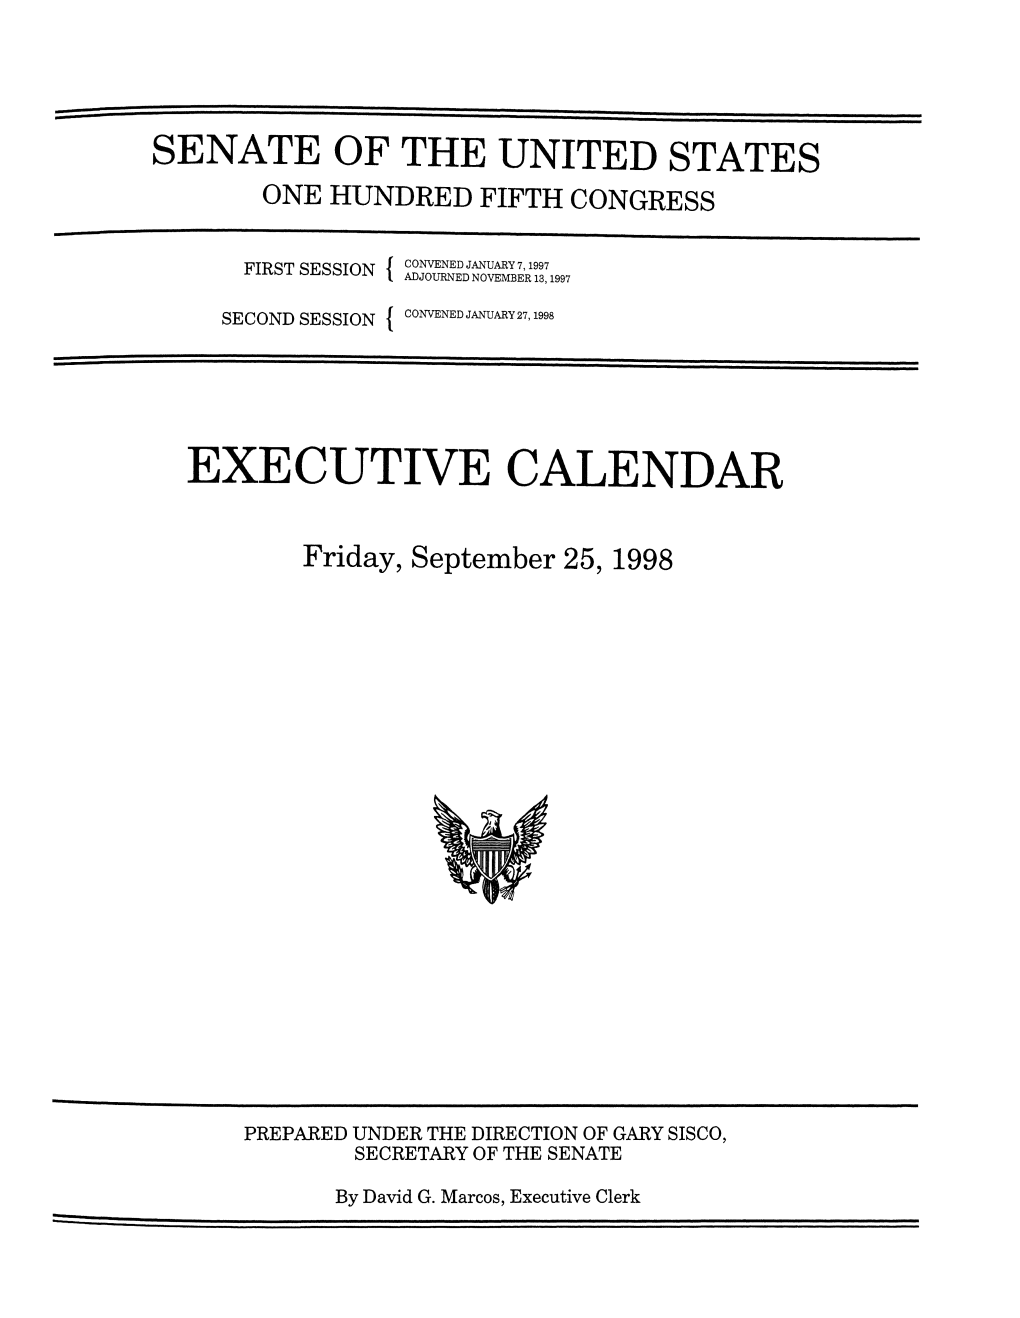 Executive Calendar